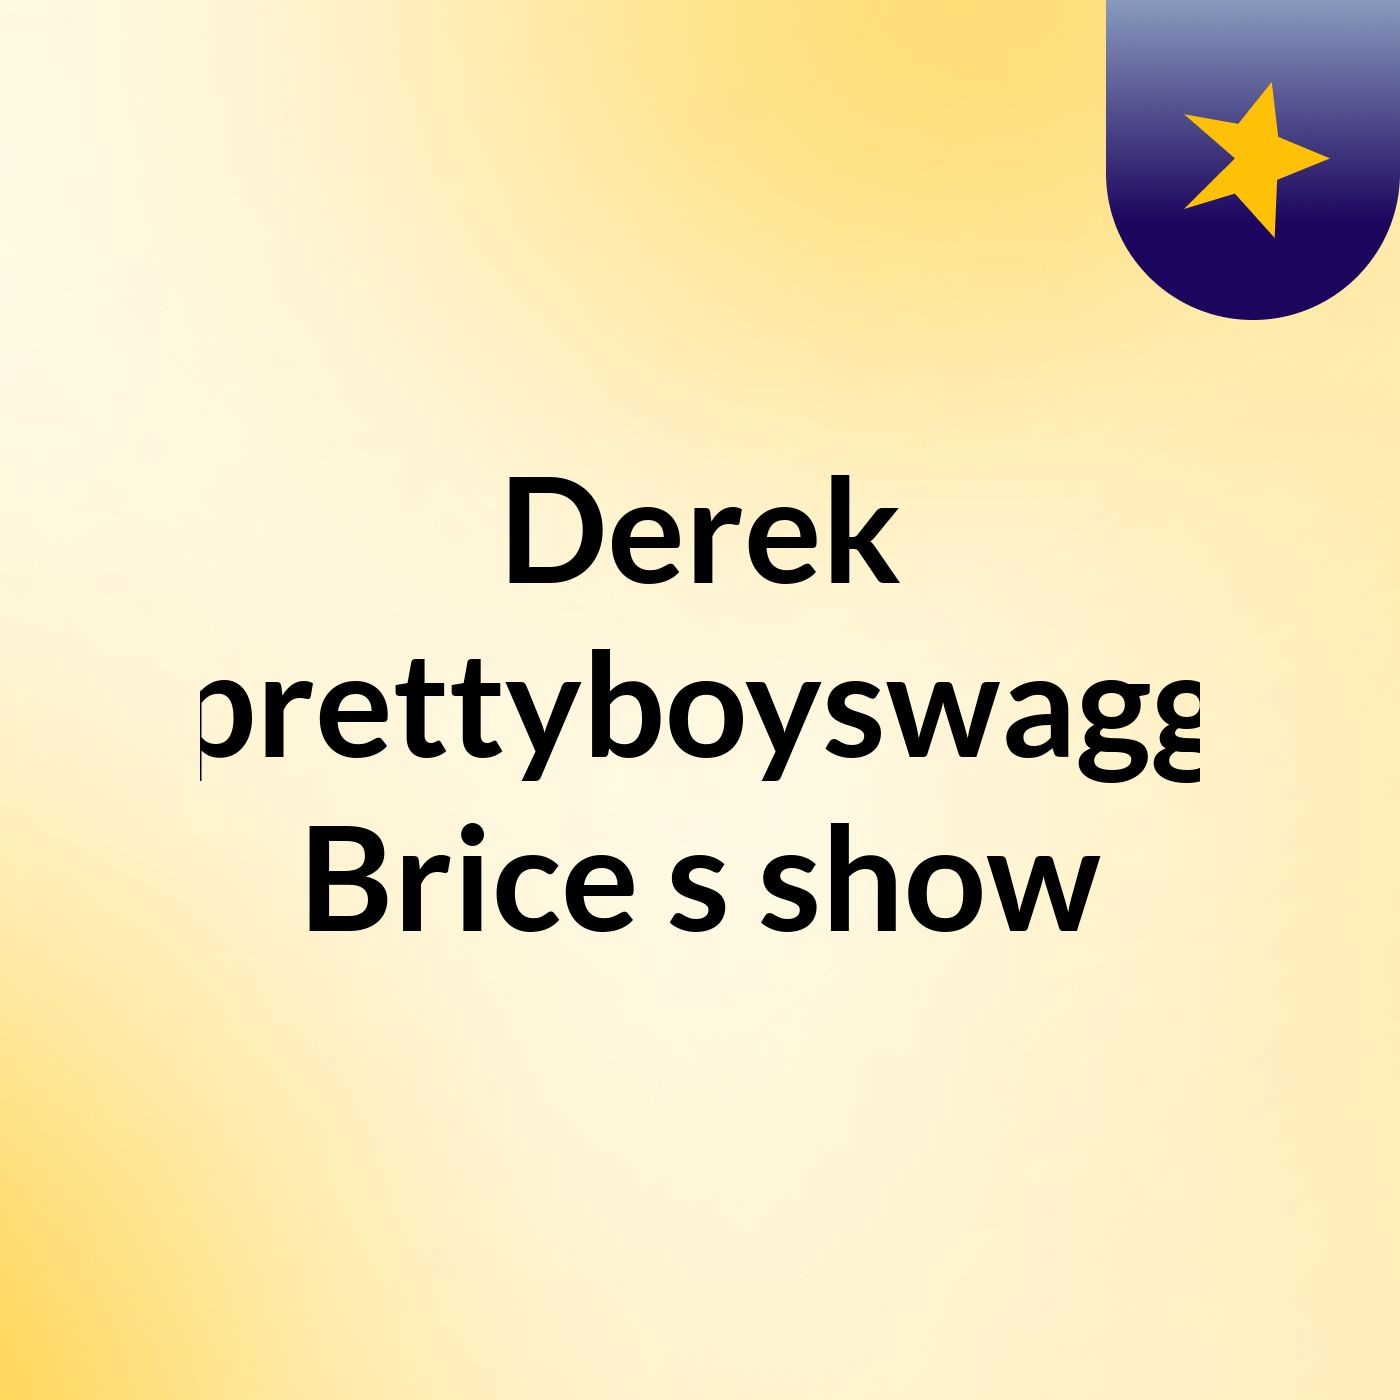 Derek 'prettyboyswagg' Brice's show